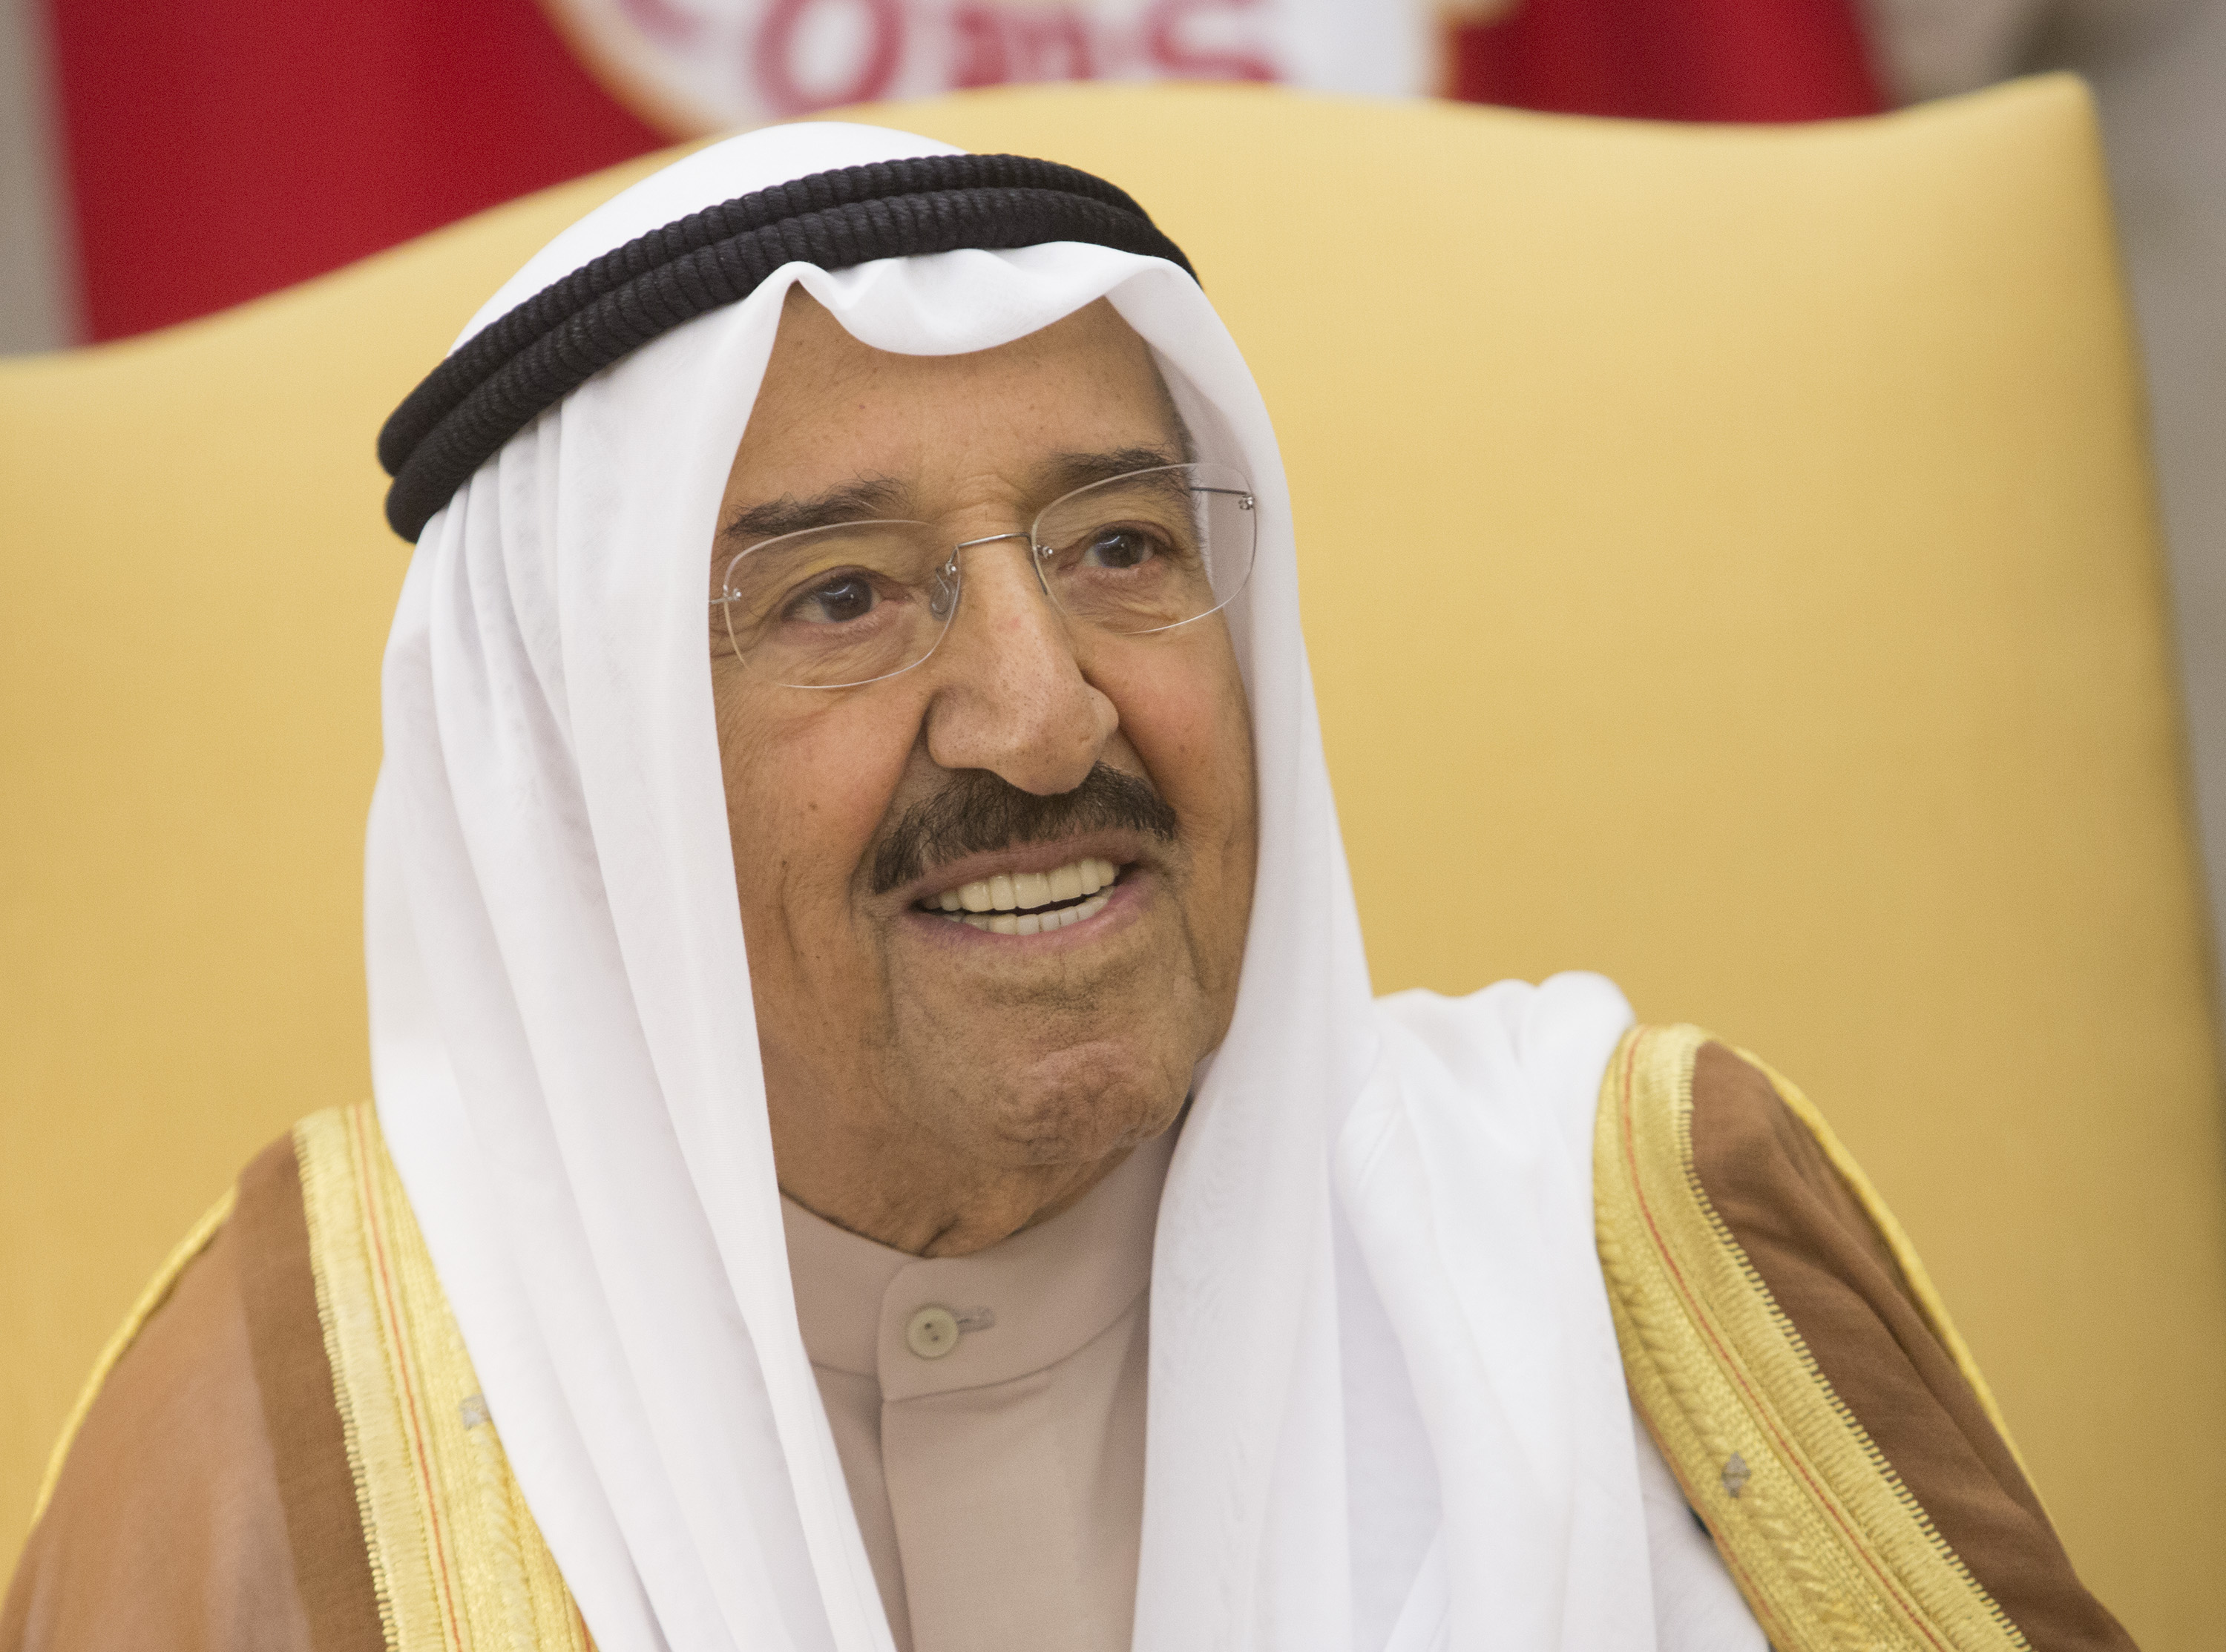 Сабах IV ал-Ахмад ал-Джабер ал-Сабах е настоящият емир на Кувейт Той полага клетва на 29 януари 2006 г. след потвърждение на избора му от парламента на Кувейт.Той е полубрат на предишния емир Джабер III ал-Ахмед ал-Джабер ал-Сабах, който го назначава за премиер през юли 2003 г., заменяйки тогава кронпринца Саад I ал-Абдула ал-Салем ал-Сабах. Преди това е външен министър за 40 години между 1963 и 2003 г., ставайки по-такъв начин един от най-дълго работещите на тази длъжност министри в света.